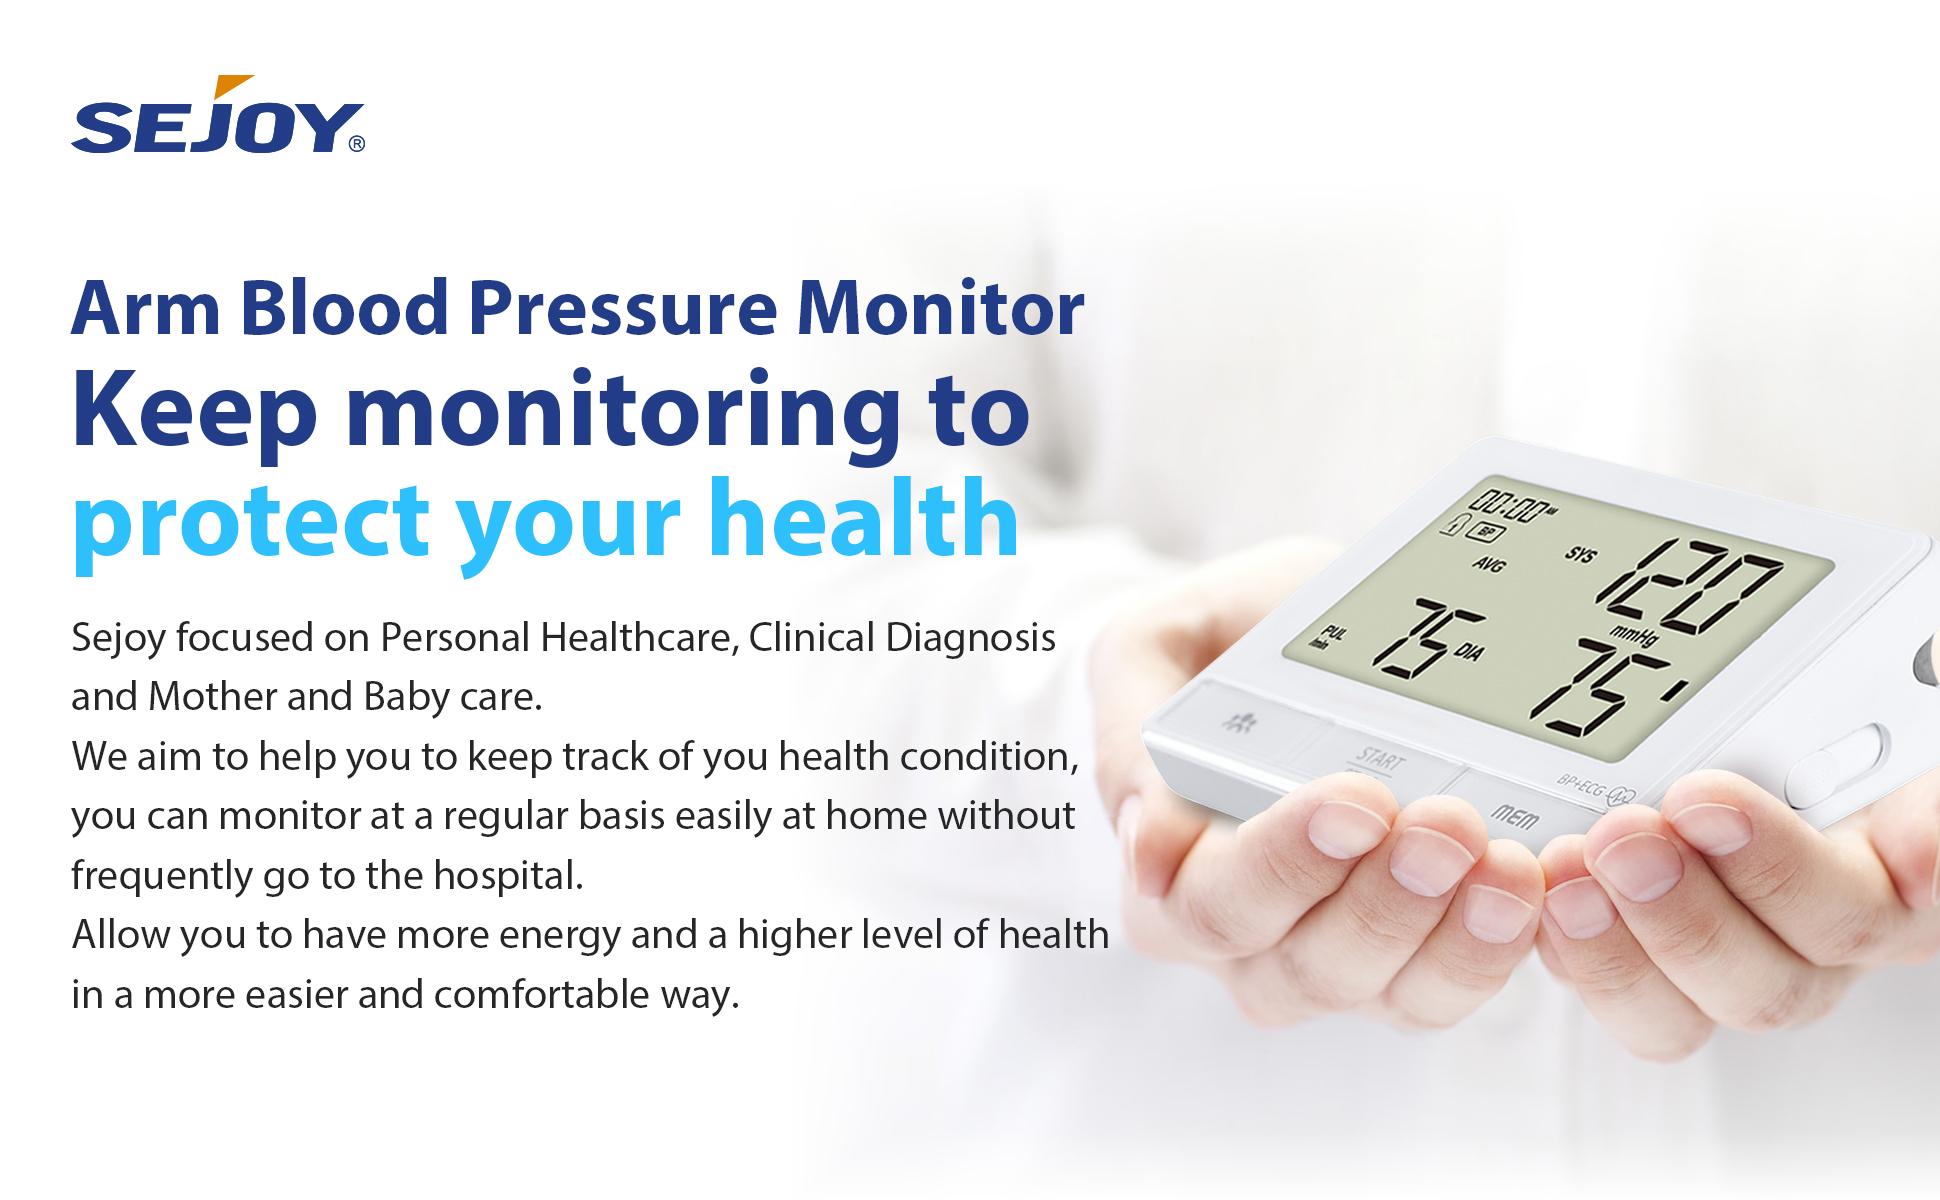 monitorando sua saúde